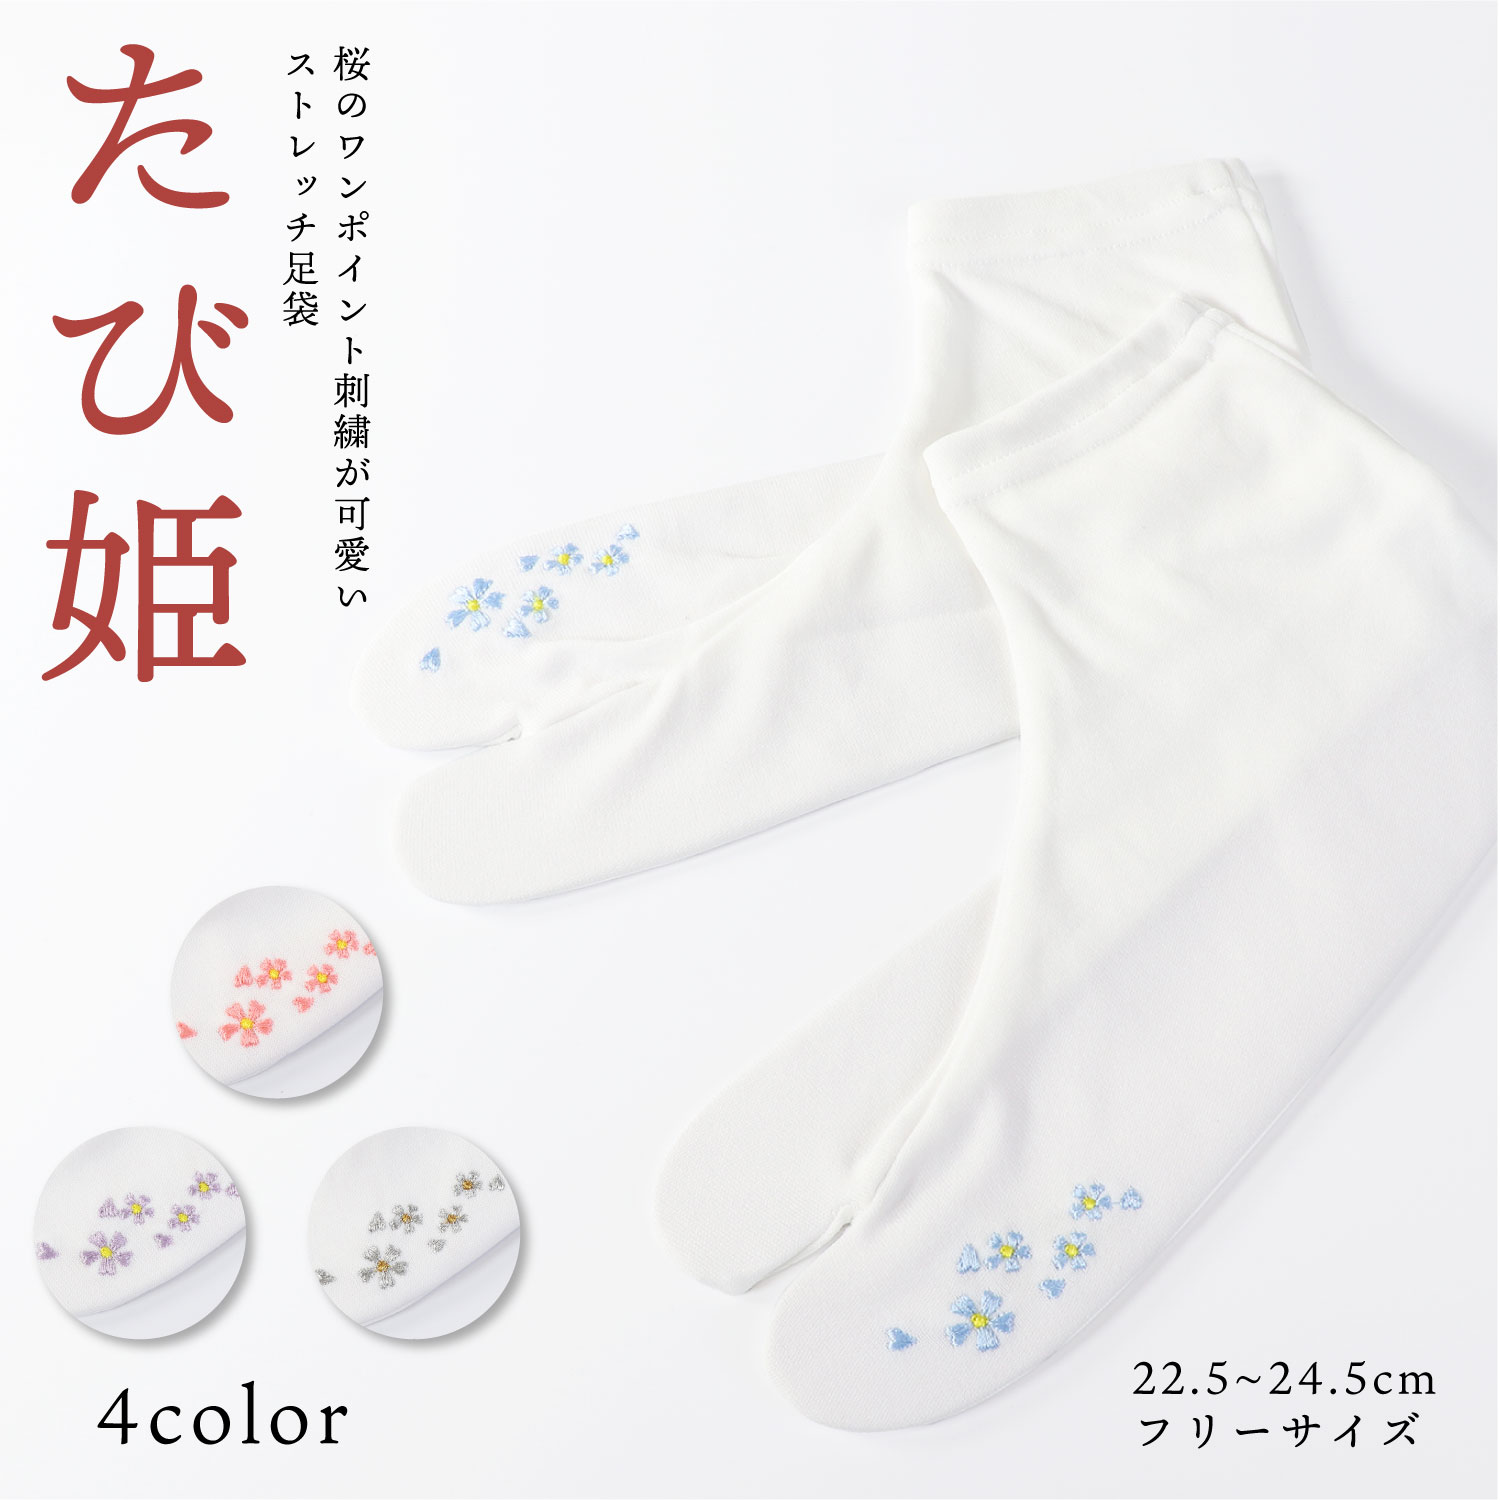 桜の刺繍のワンポイントがおしゃれなストレッチ足袋『たび姫』